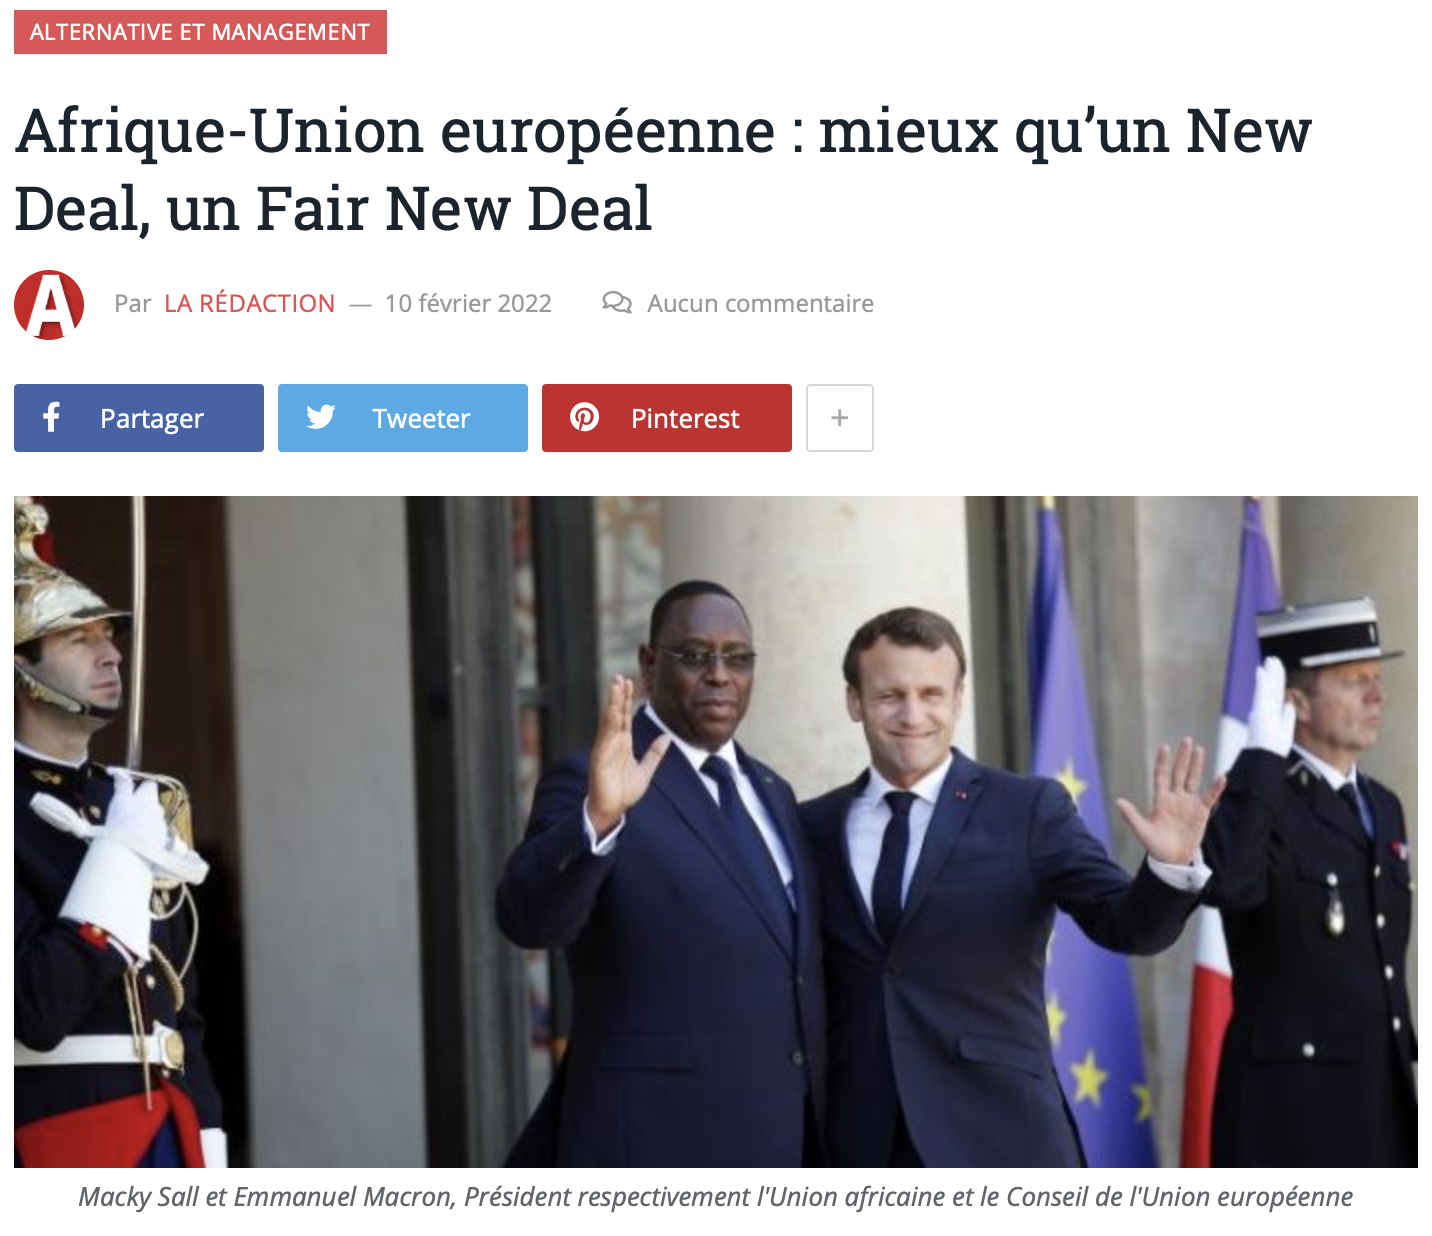 De la nécessité d’un « Fair New Deal » avec l’Afrique, par Pierre-Samuel Guedj, Président d’Affectio Mutandi